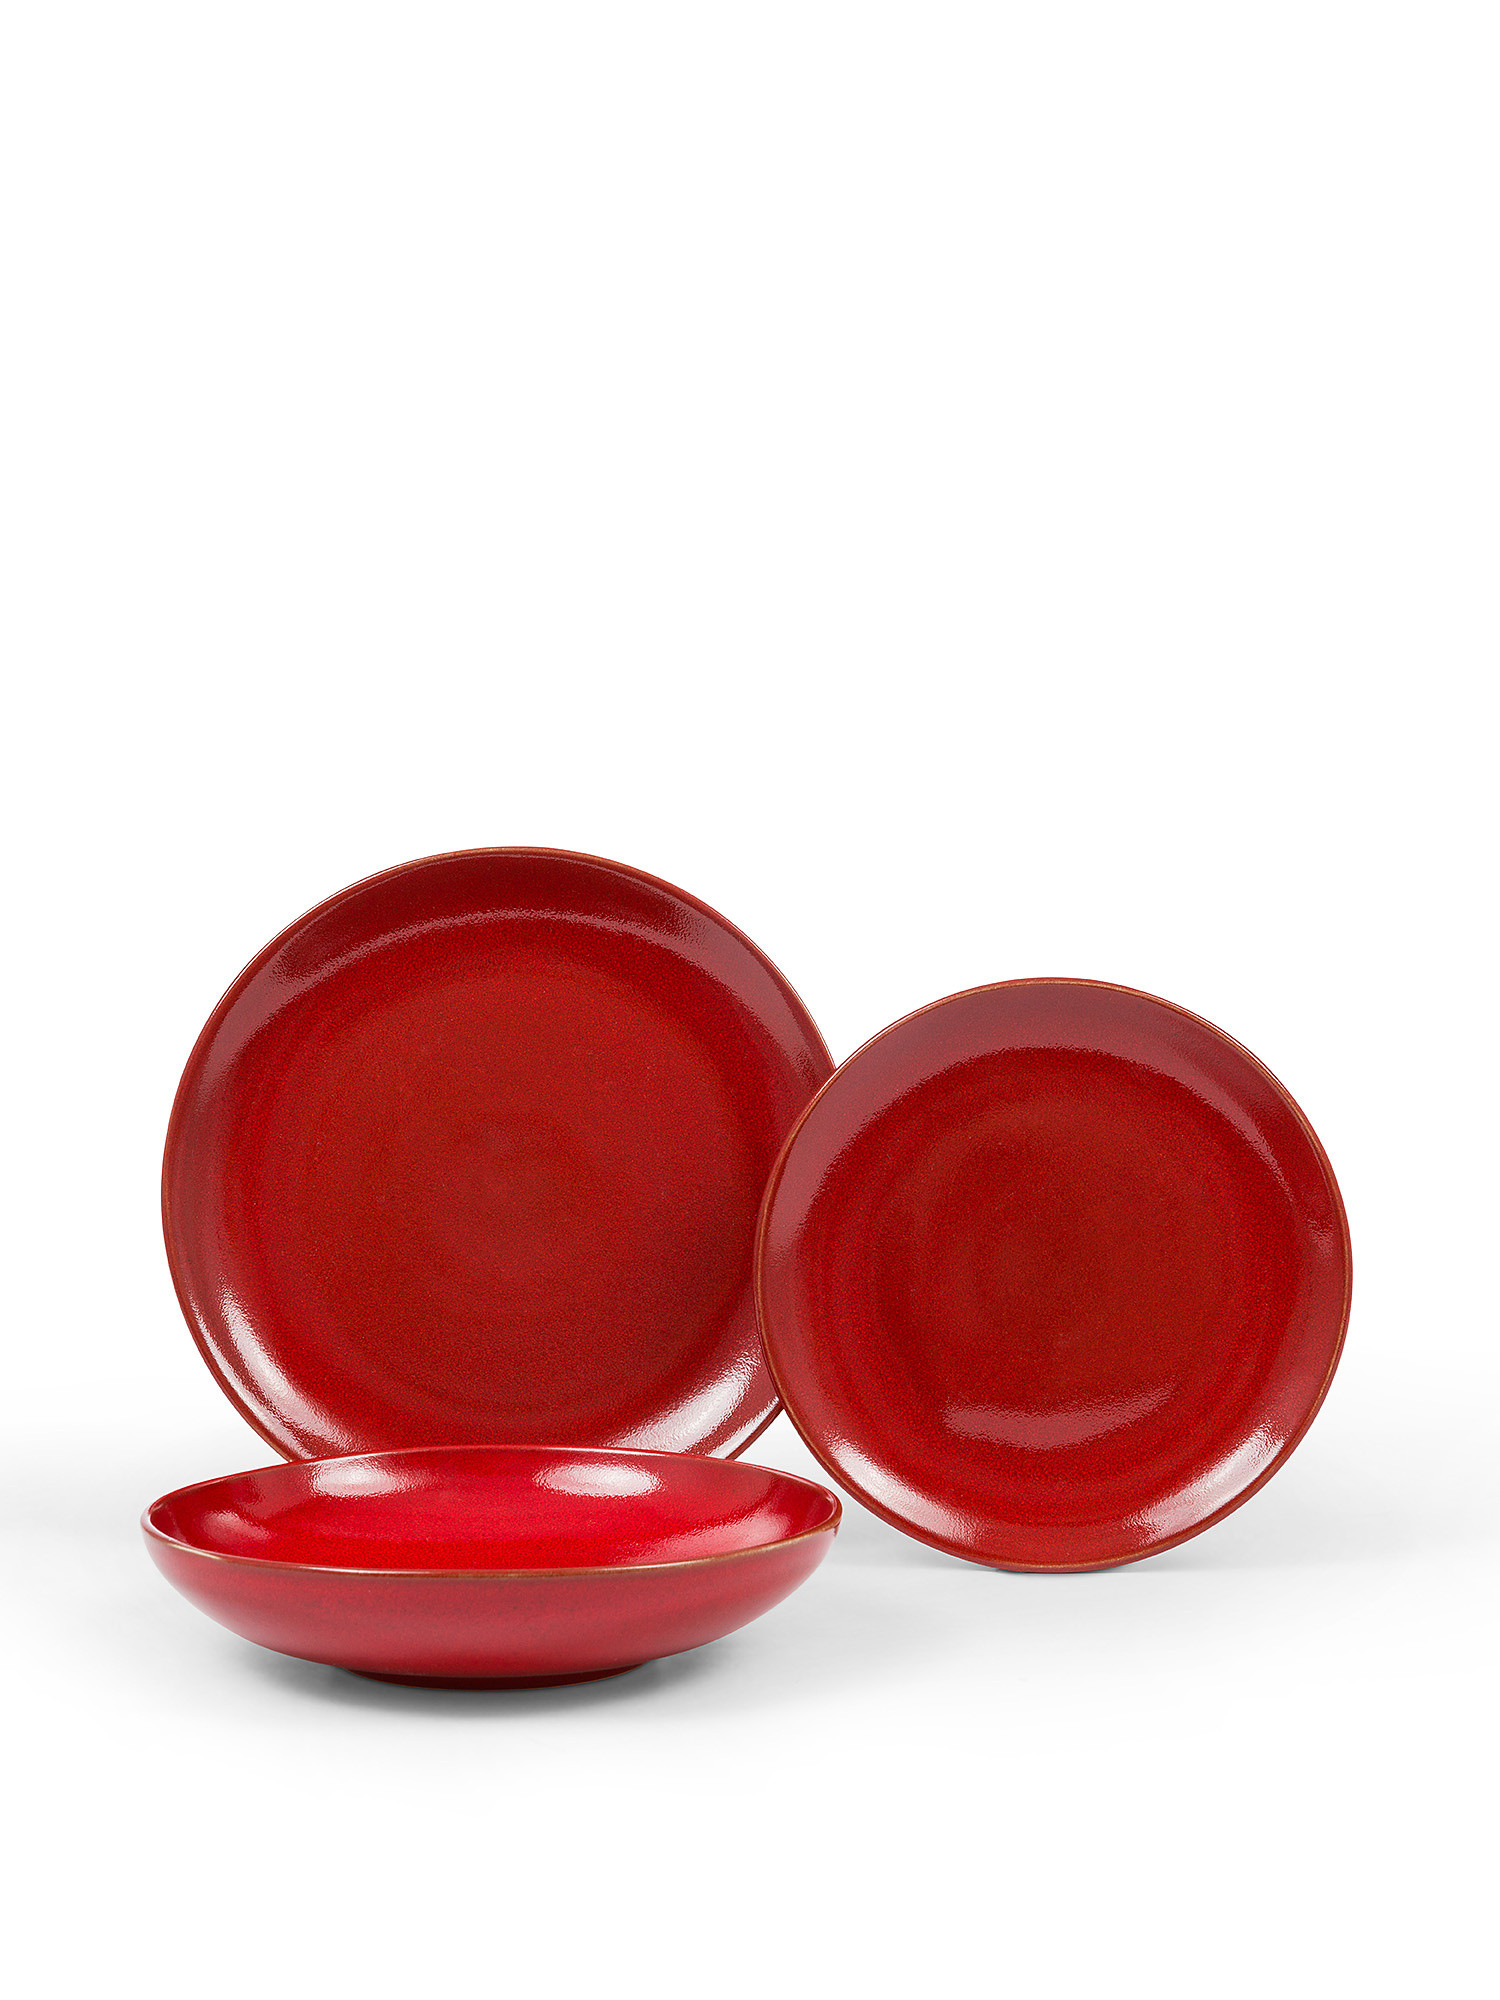 Piatto frutta ceramica effetto anticato, Rosso, large image number 1